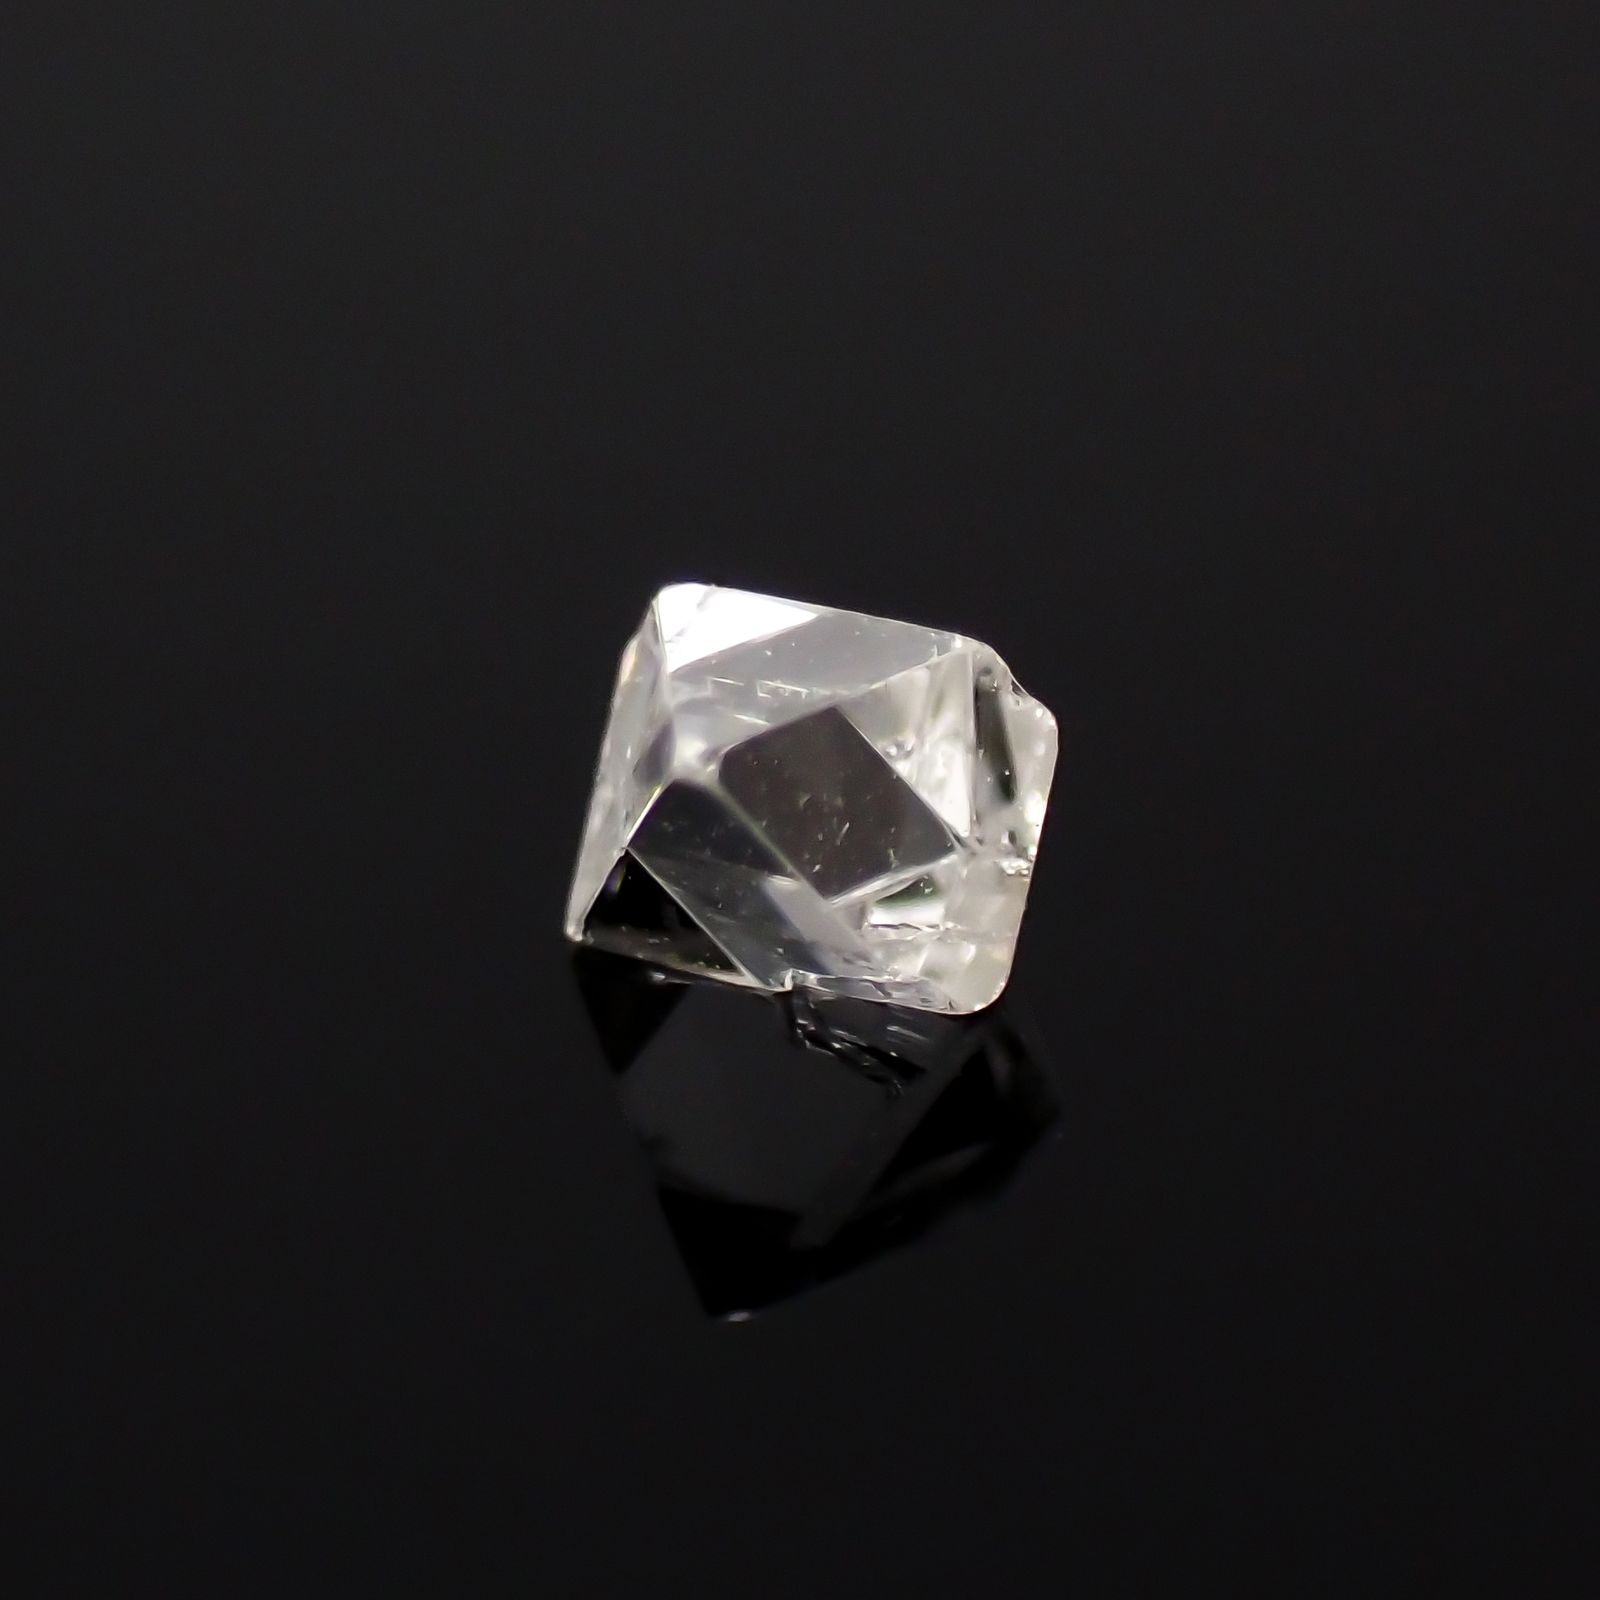 ソーヤブルダイヤモンド 原石 0.095ct[231023619]2.9x2.8mm前後 | TOP